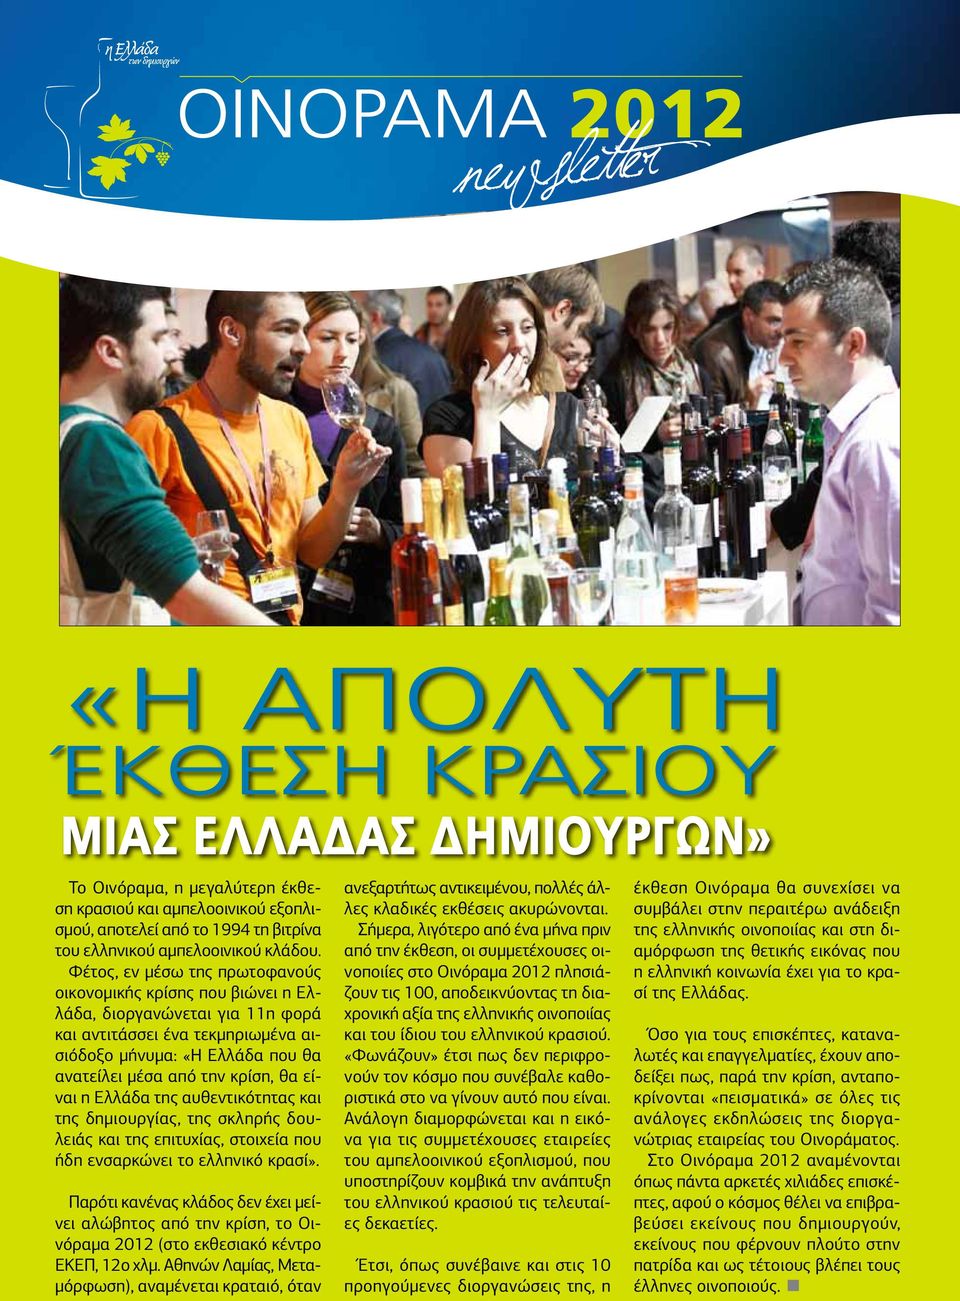 είναι η Ελλάδα της αυθεντικότητας και της δημιουργίας, της σκληρής δουλειάς και της επιτυχίας, στοιχεία που ήδη ενσαρκώνει το ελληνικό κρασί».